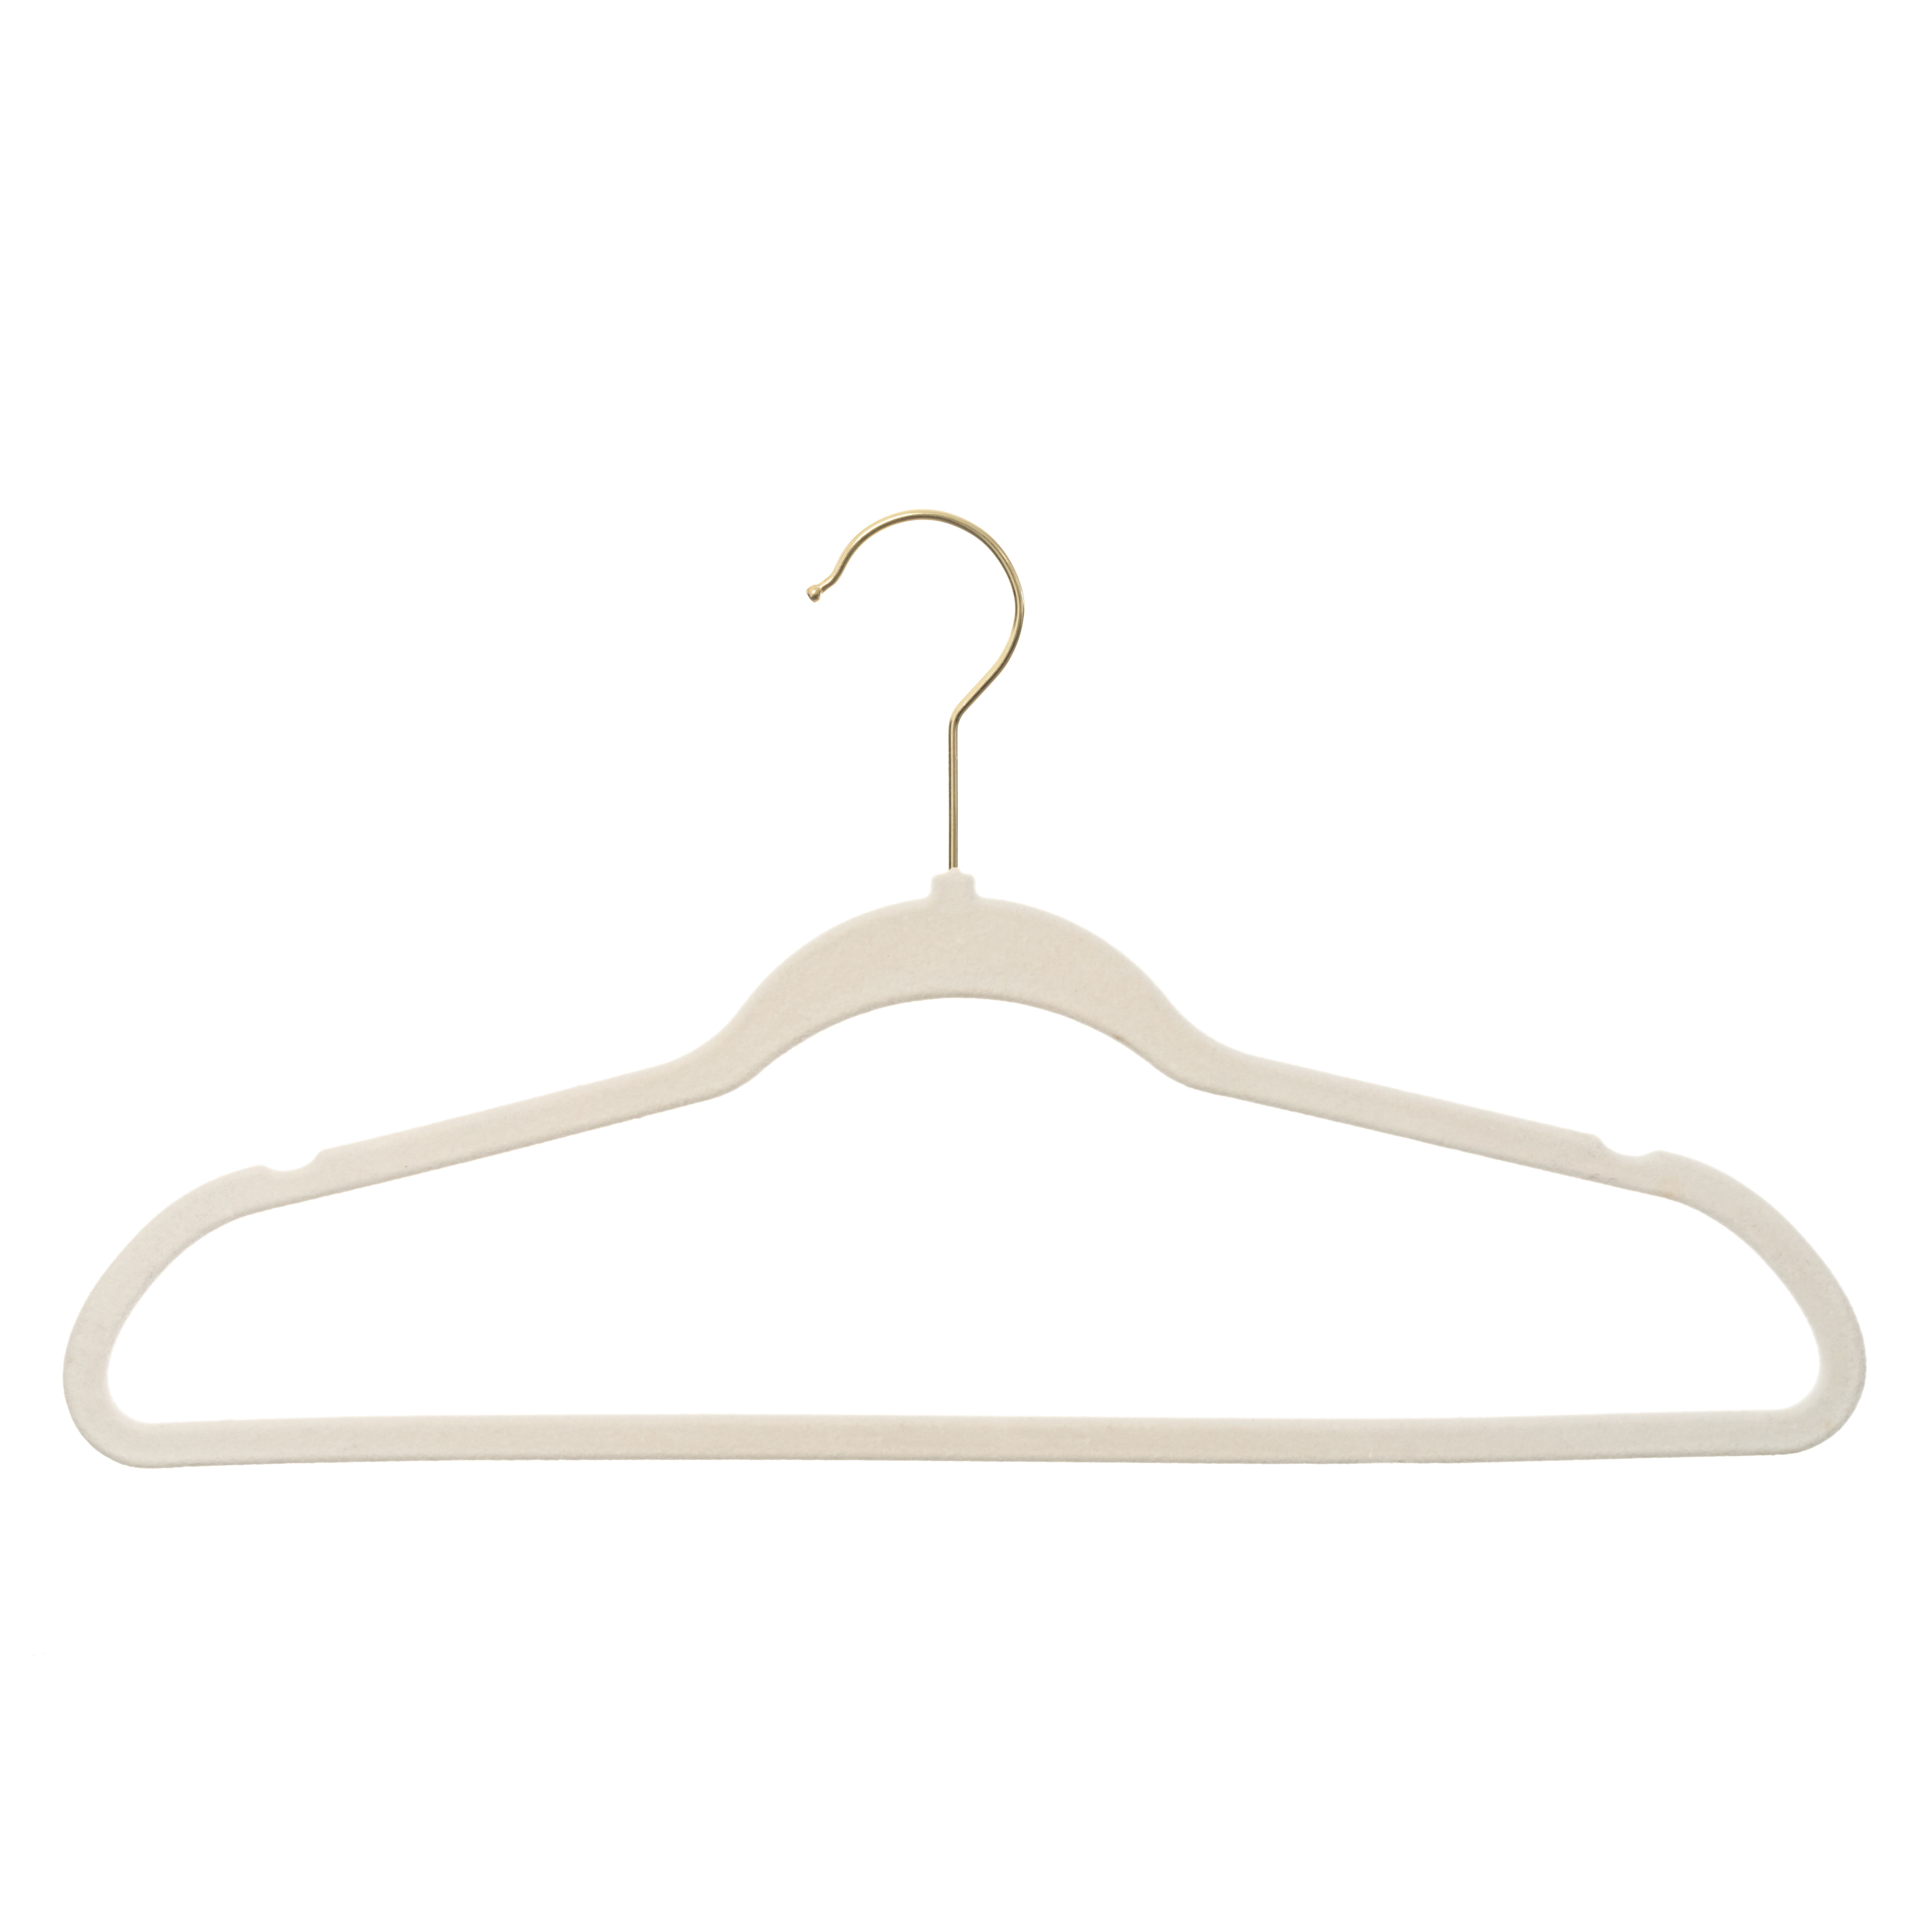 Better Homes & Gardens Non-Slip Velvet Clothing Hangers, Beige, 30 Count - image 5 of 5